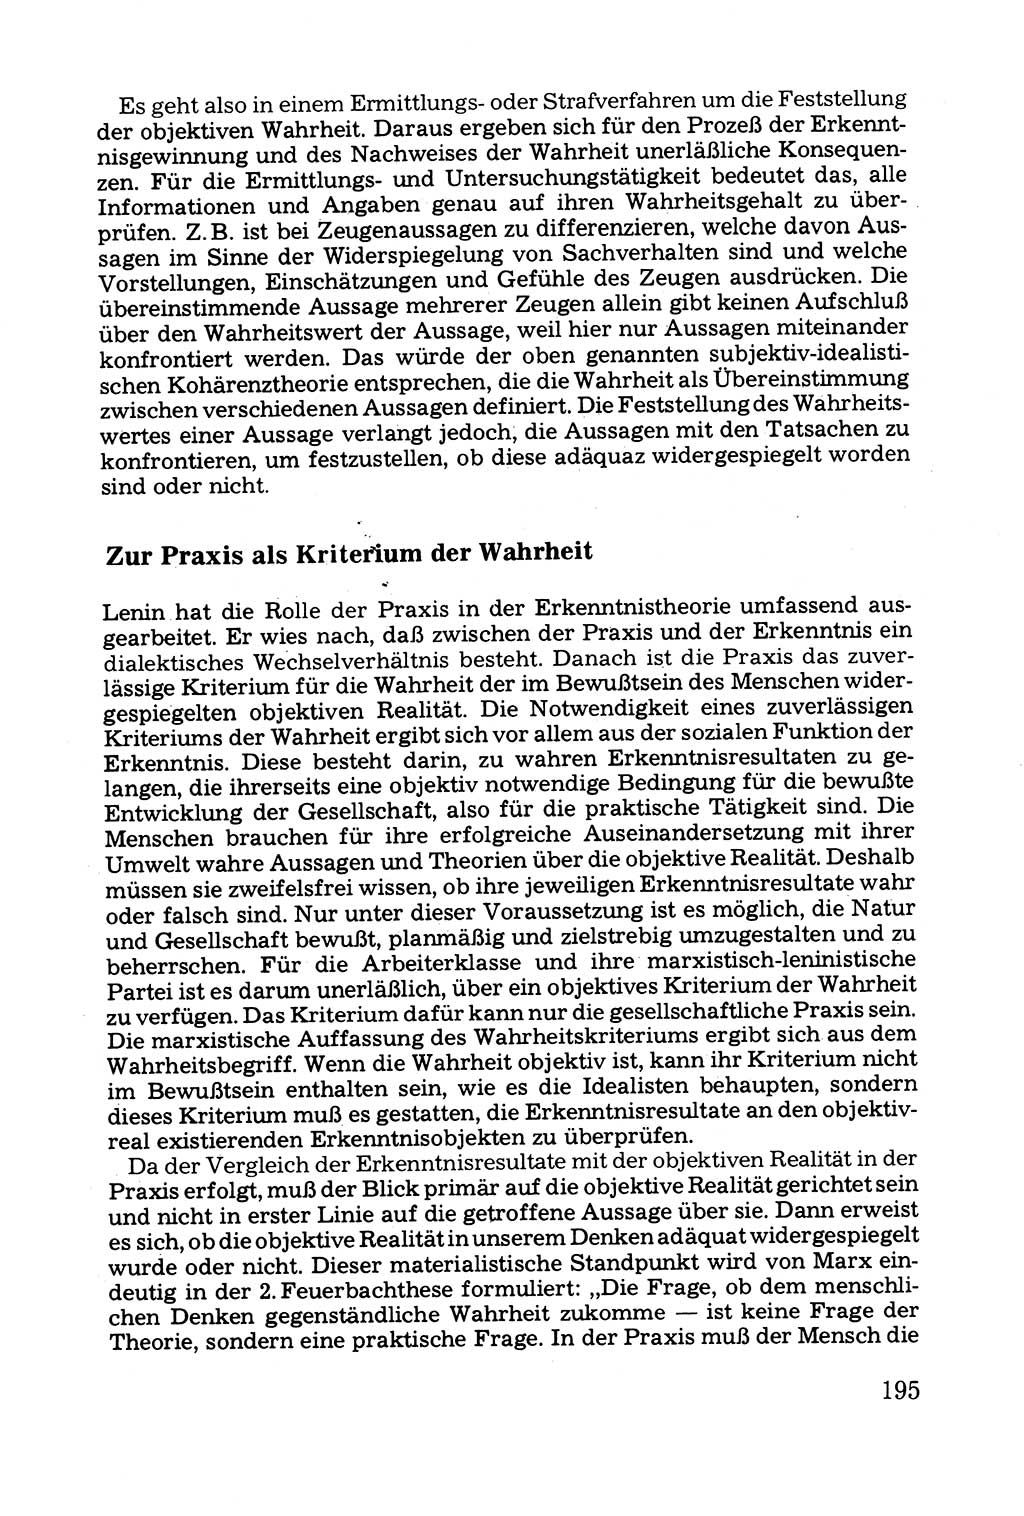 Grundfragen der Beweisführung im Ermittlungsverfahren [Deutsche Demokratische Republik (DDR)] 1980, Seite 195 (Bws.-Fhrg. EV DDR 1980, S. 195)